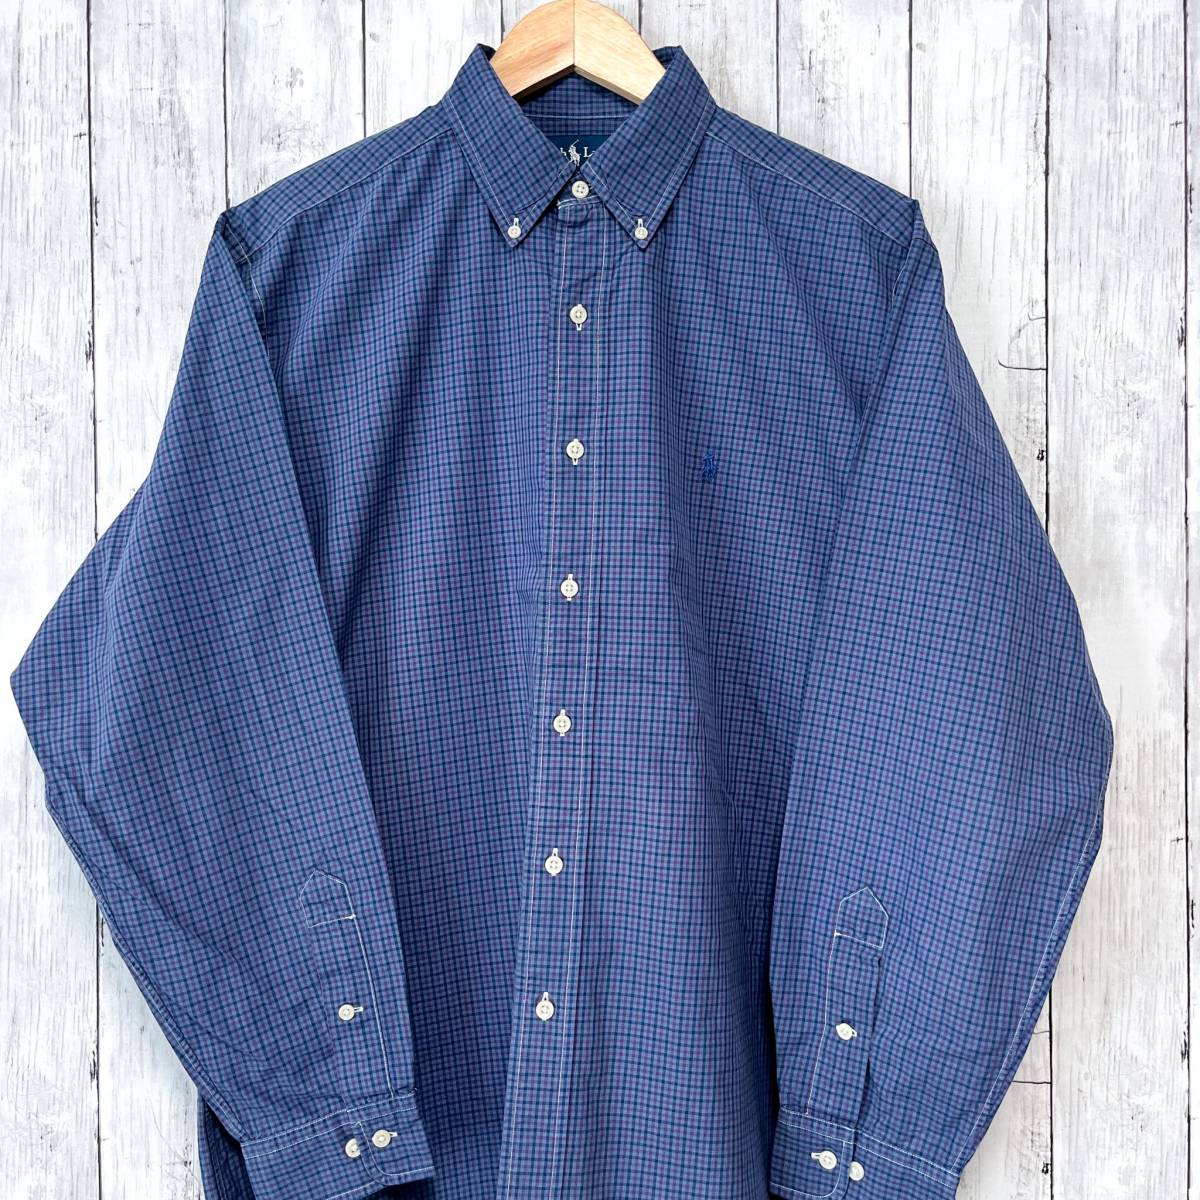 ラルフローレン Ralph Lauren チェックシャツ 長袖シャツ メンズ ワンポイント サイズ16 Lサイズ 2-477